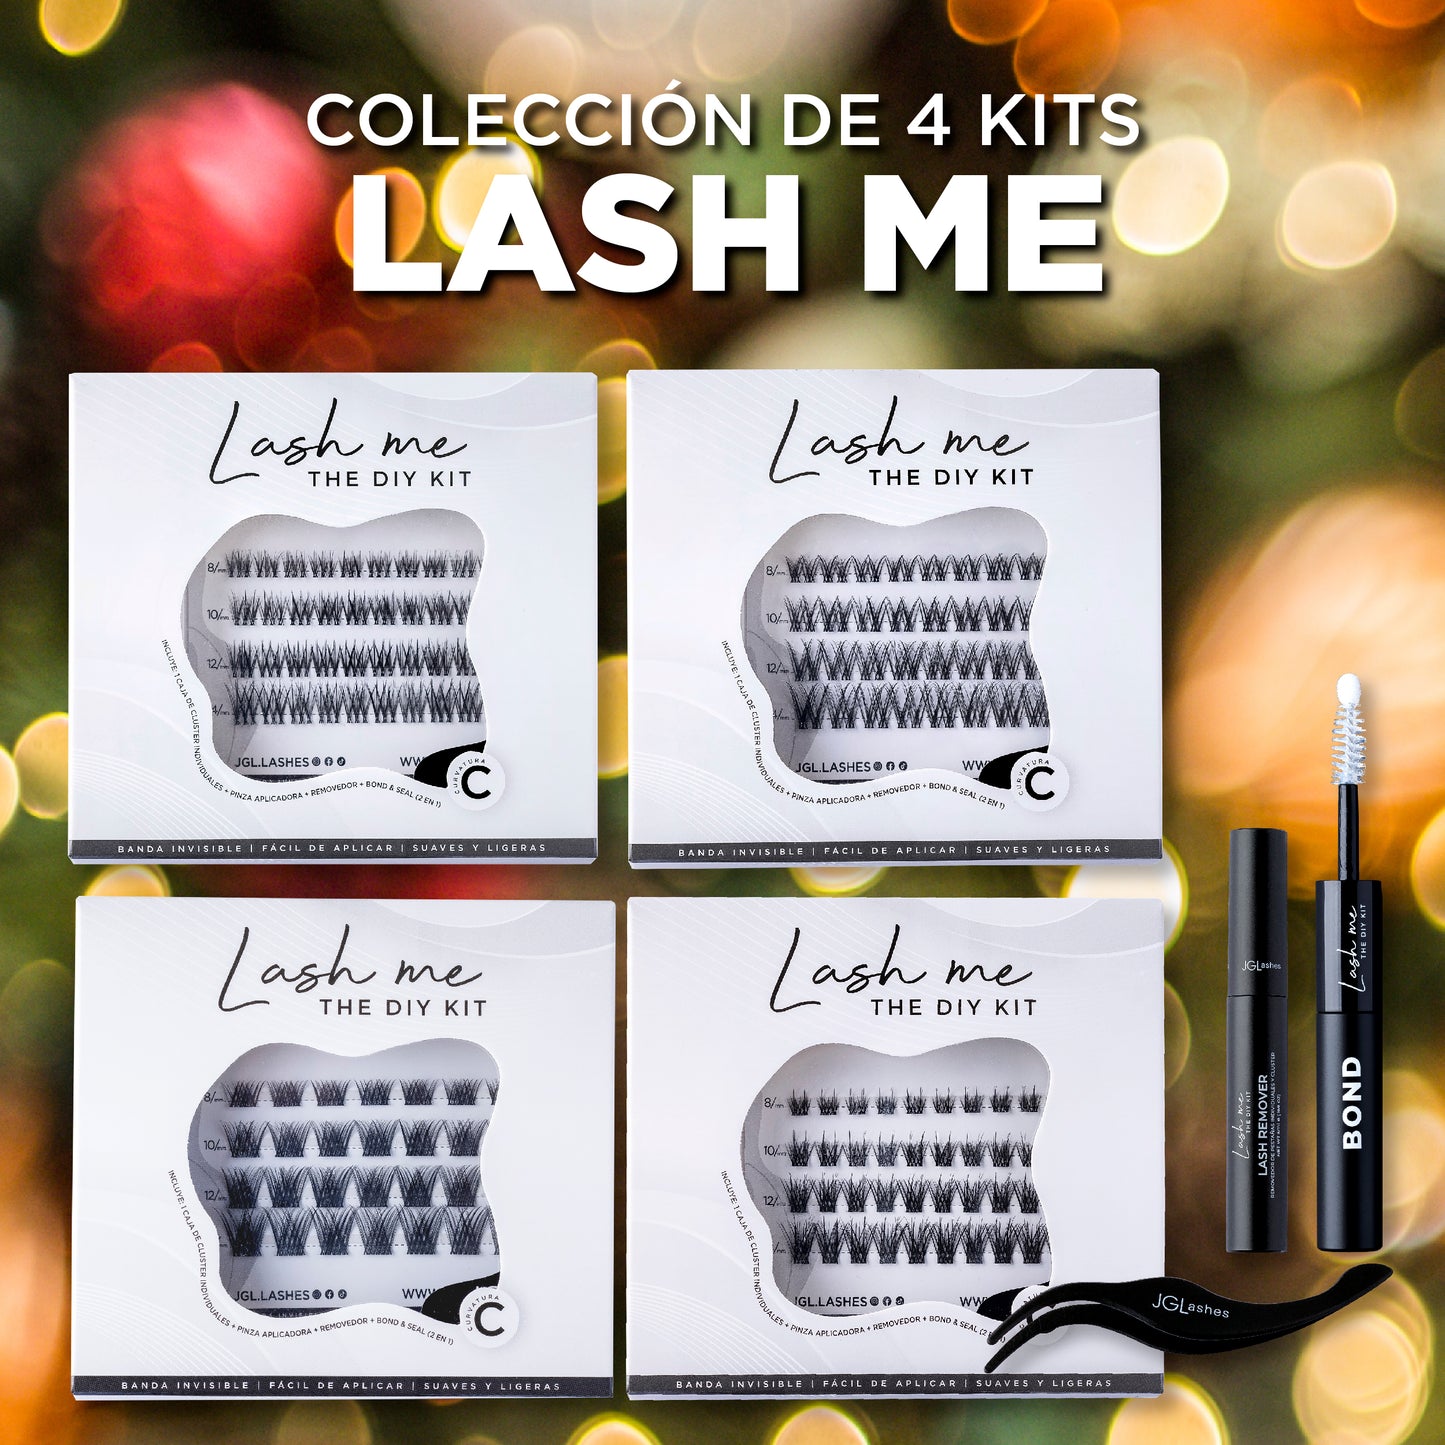 Colección 4 kits Lash me